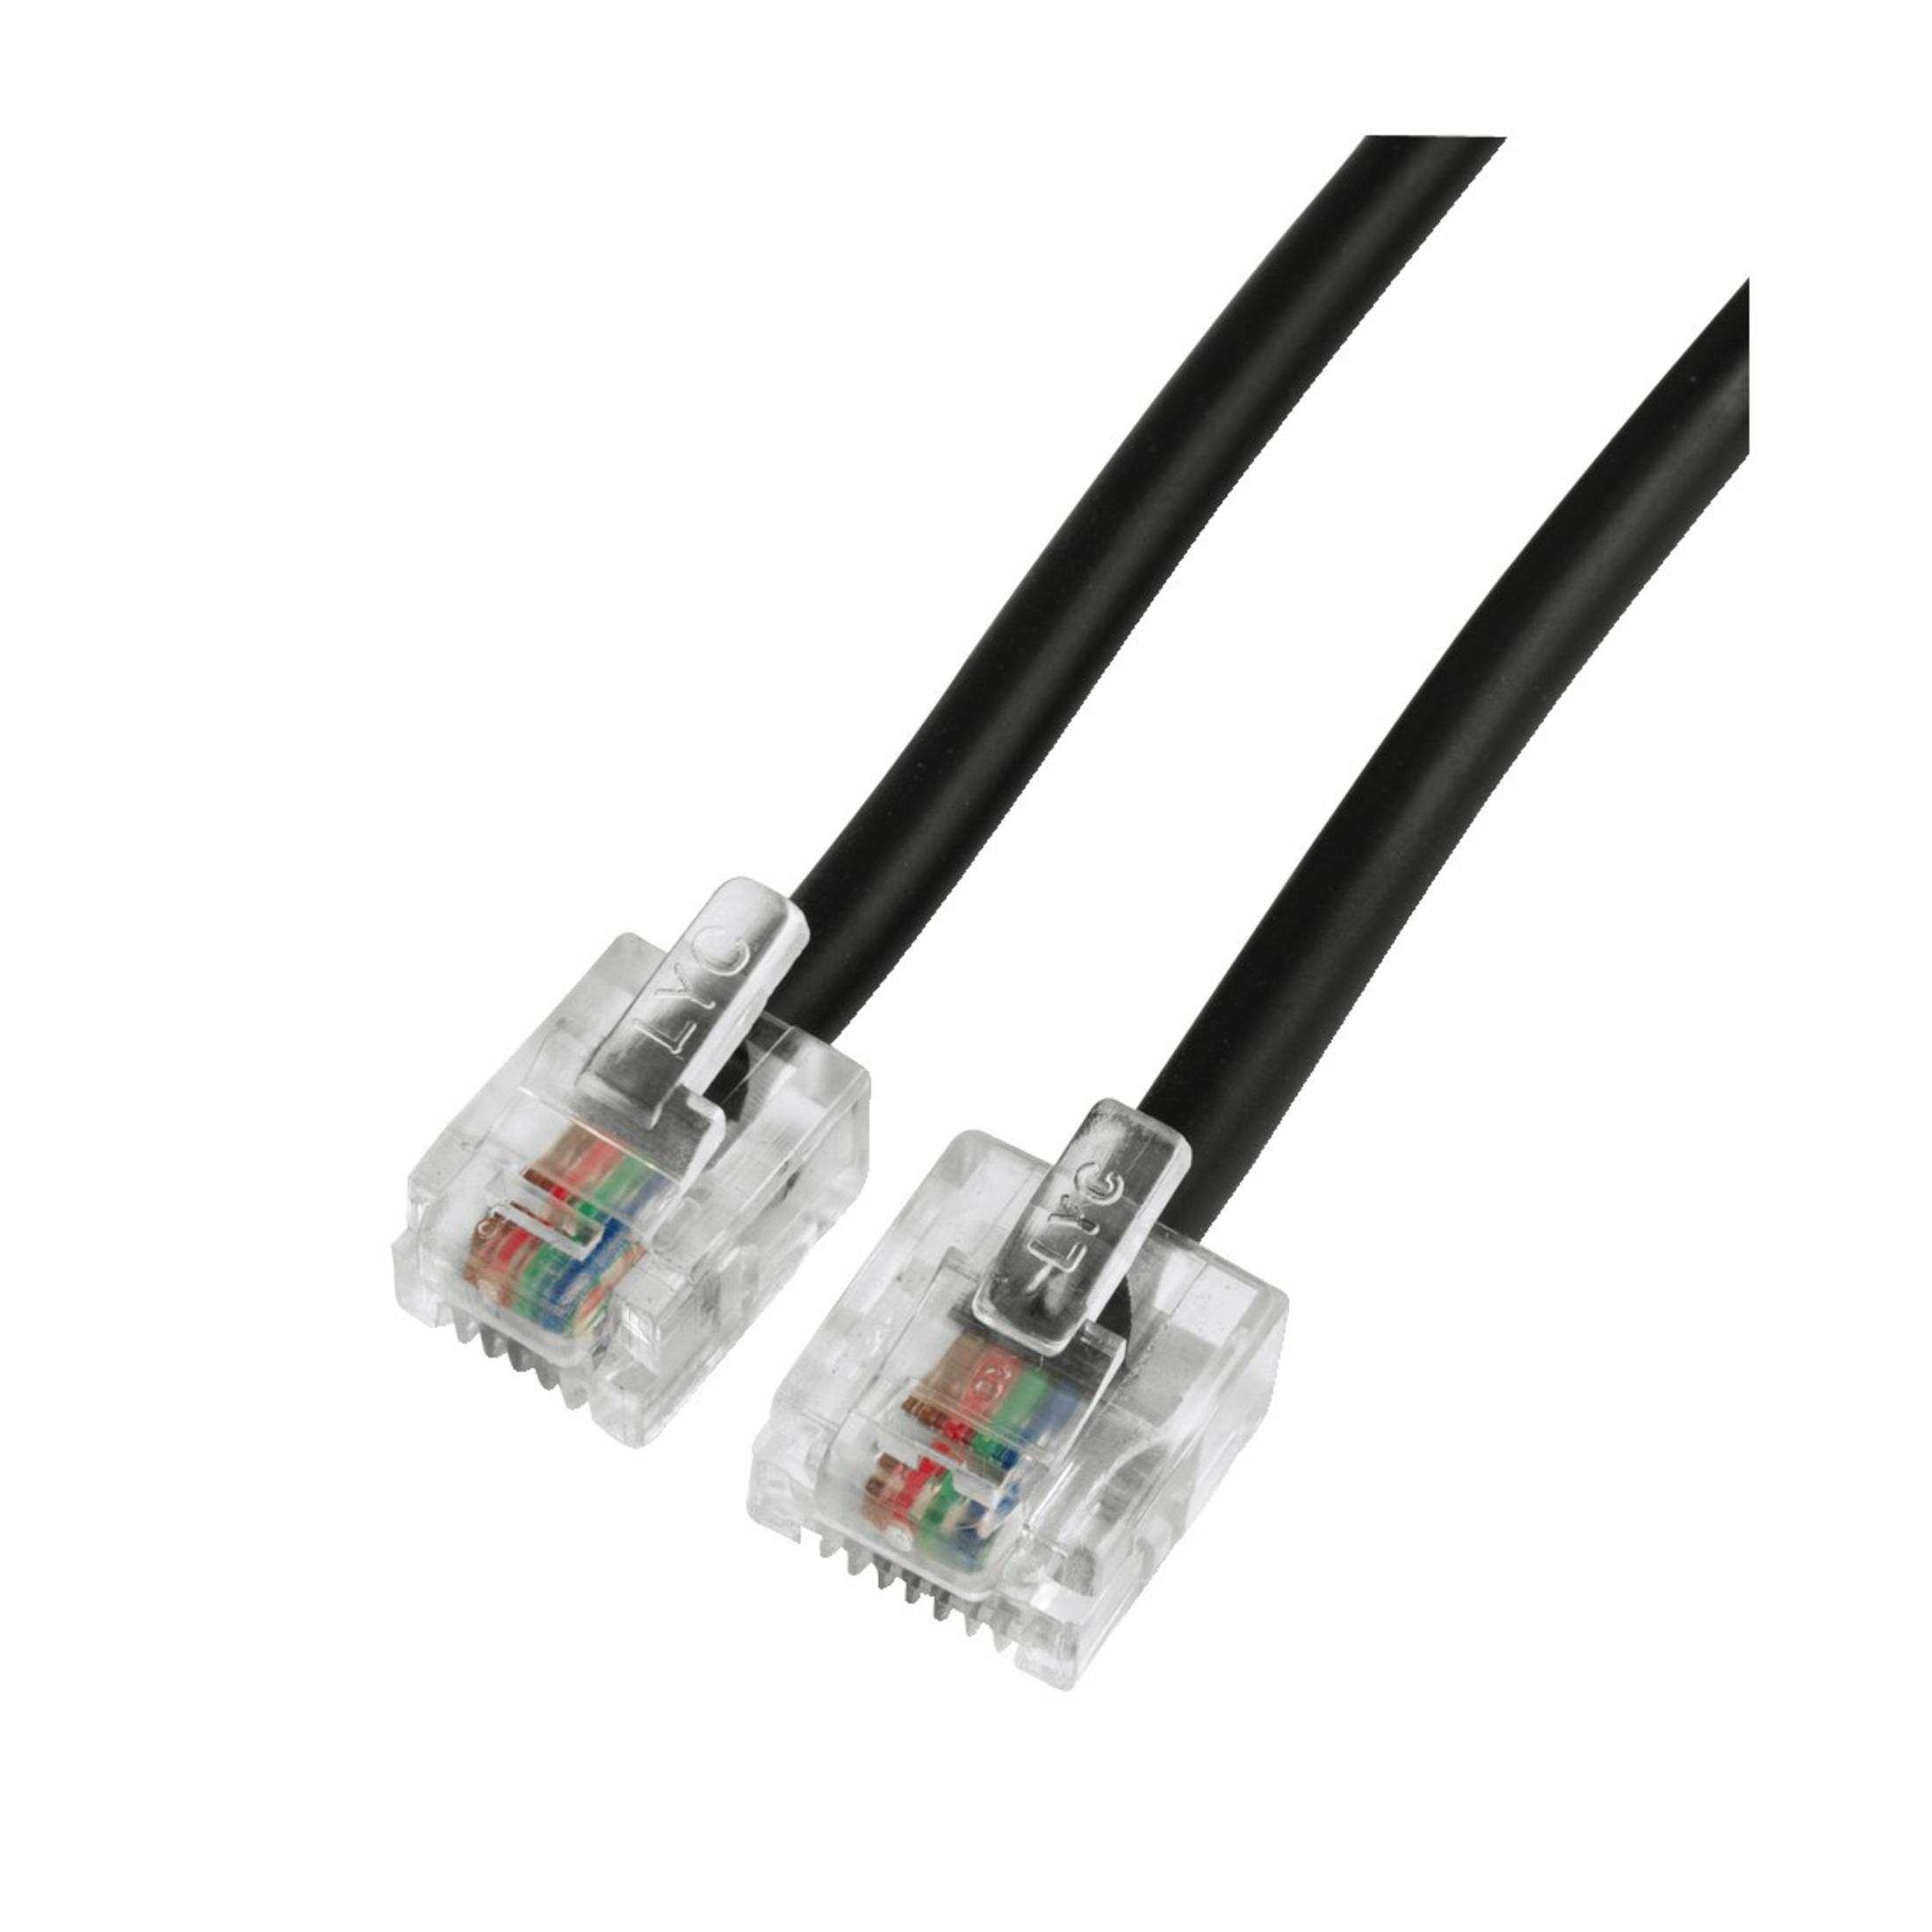 DSL-Anschlusskabel, m MOD.8P4C-MOD.6P4C HAMA 10 10M, 040607